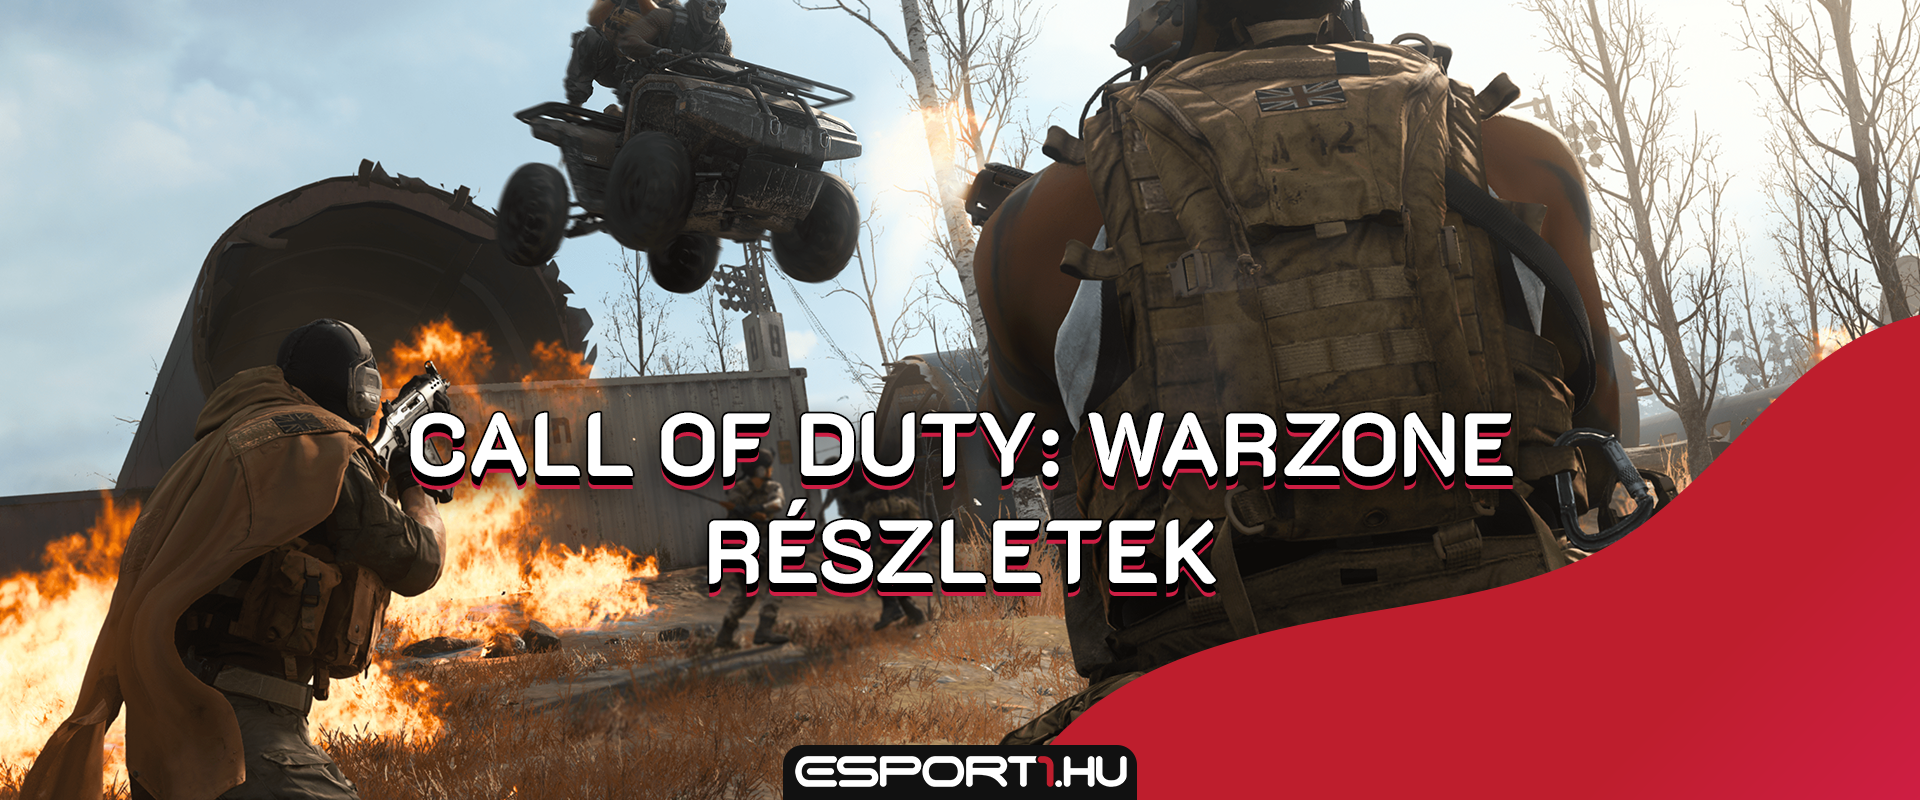 Gameplay videó is kikerült a netre a Call of Duty: Warzone-ról, az új CoD battle royale-ról